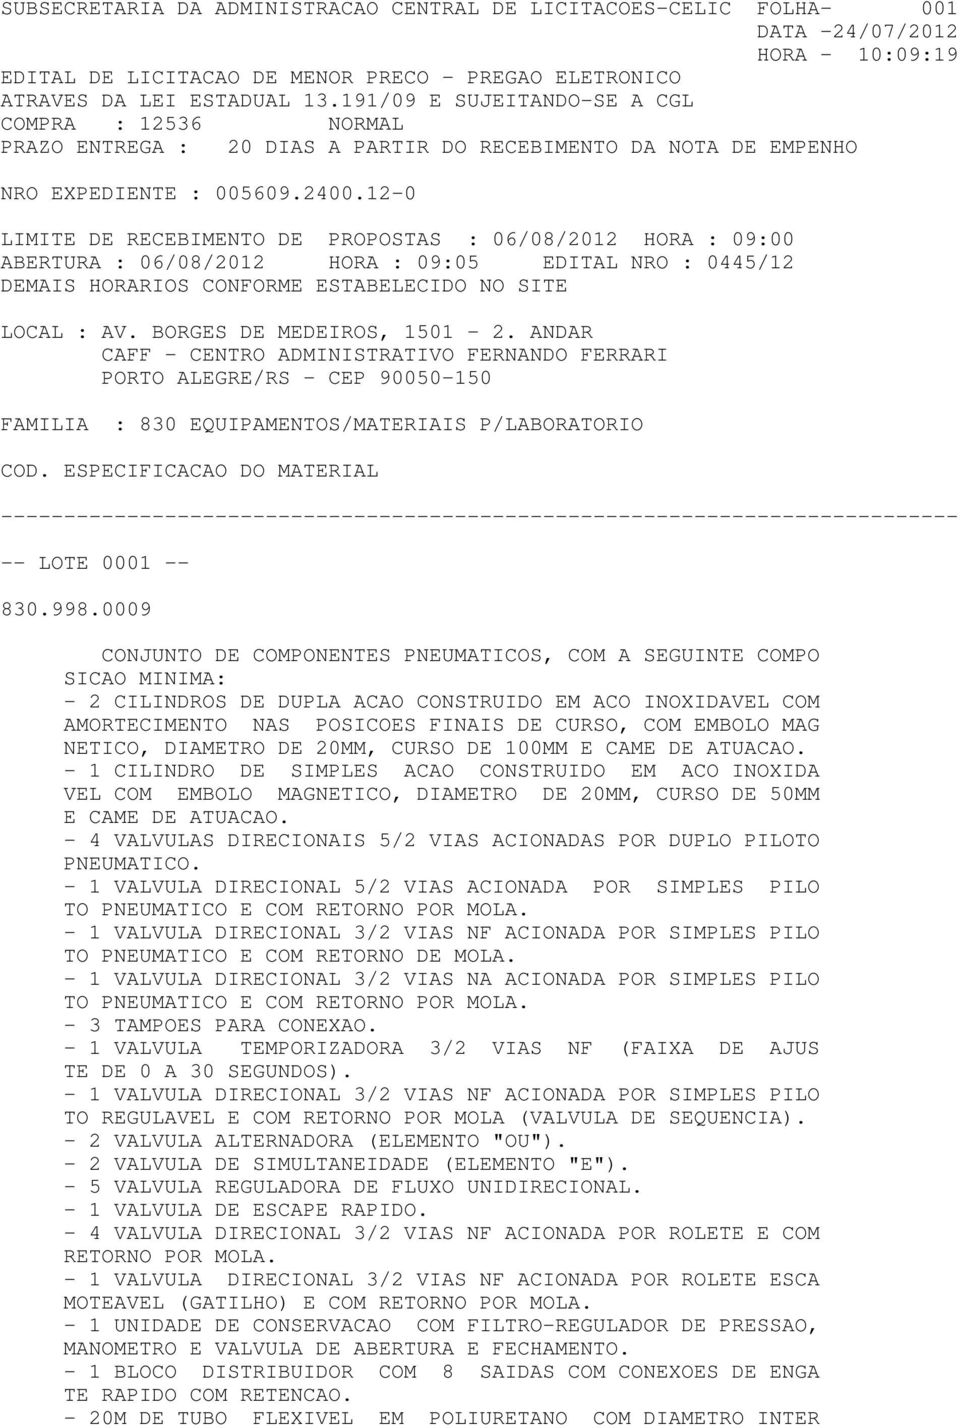 06/08/2012 HORA : 09:05 EDITAL NRO : 0445/12 DEMAIS HORARIOS CONFORME ESTABELECIDO NO SITE LOCAL : AV. BORGES DE MEDEIROS, 1501-2.